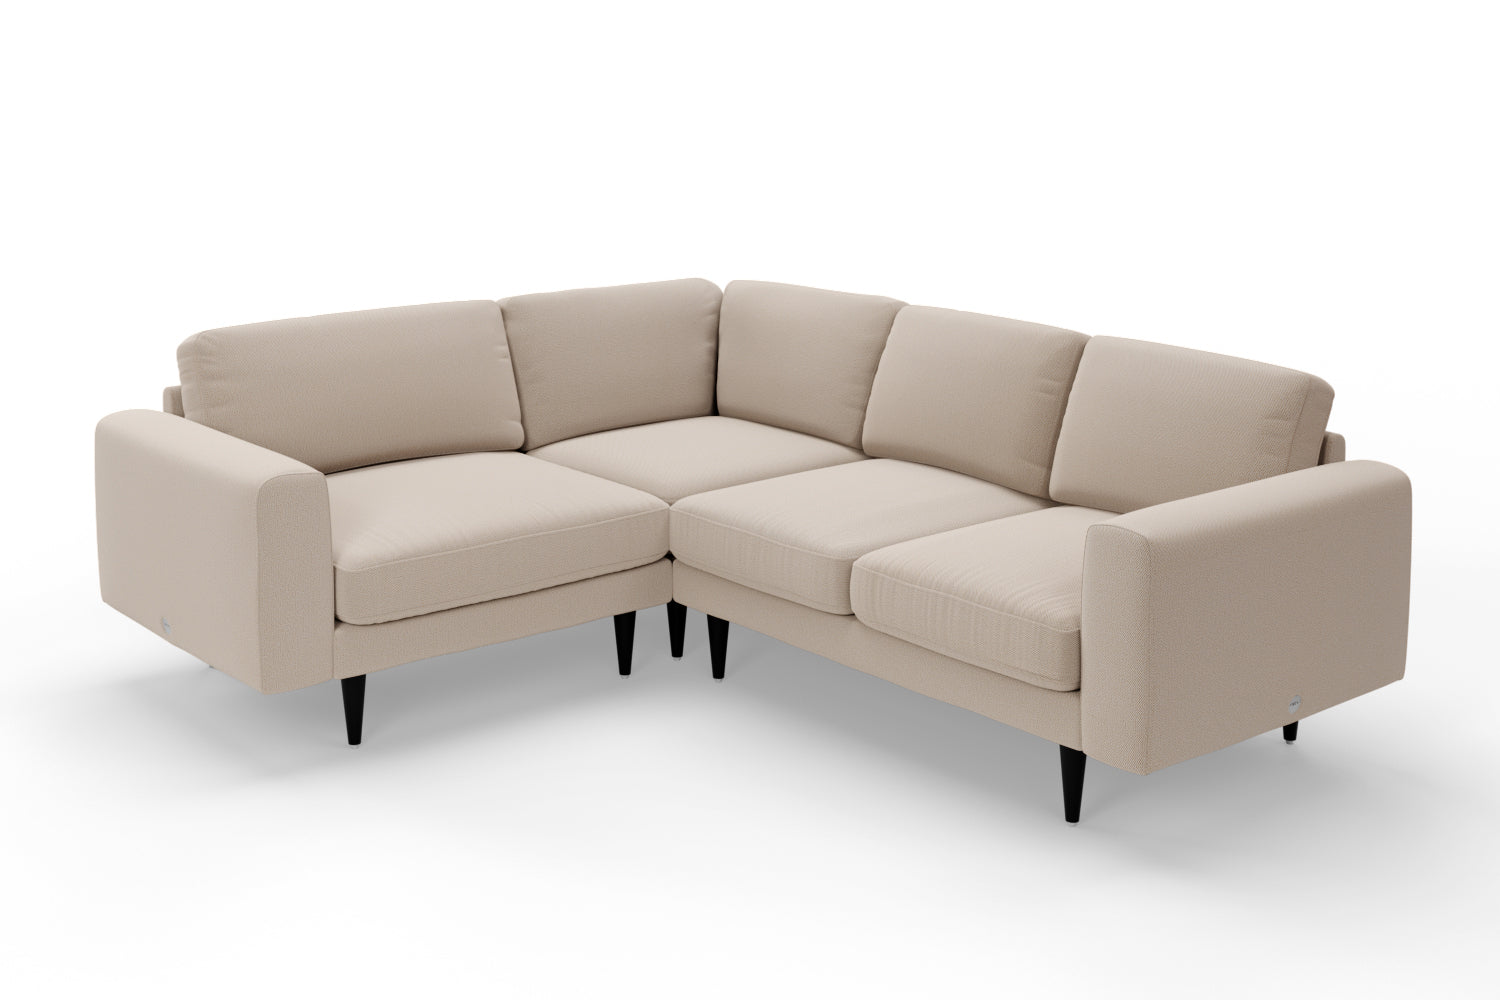 SNUG | The Big Chill Corner Sofa Small in Oatmeal